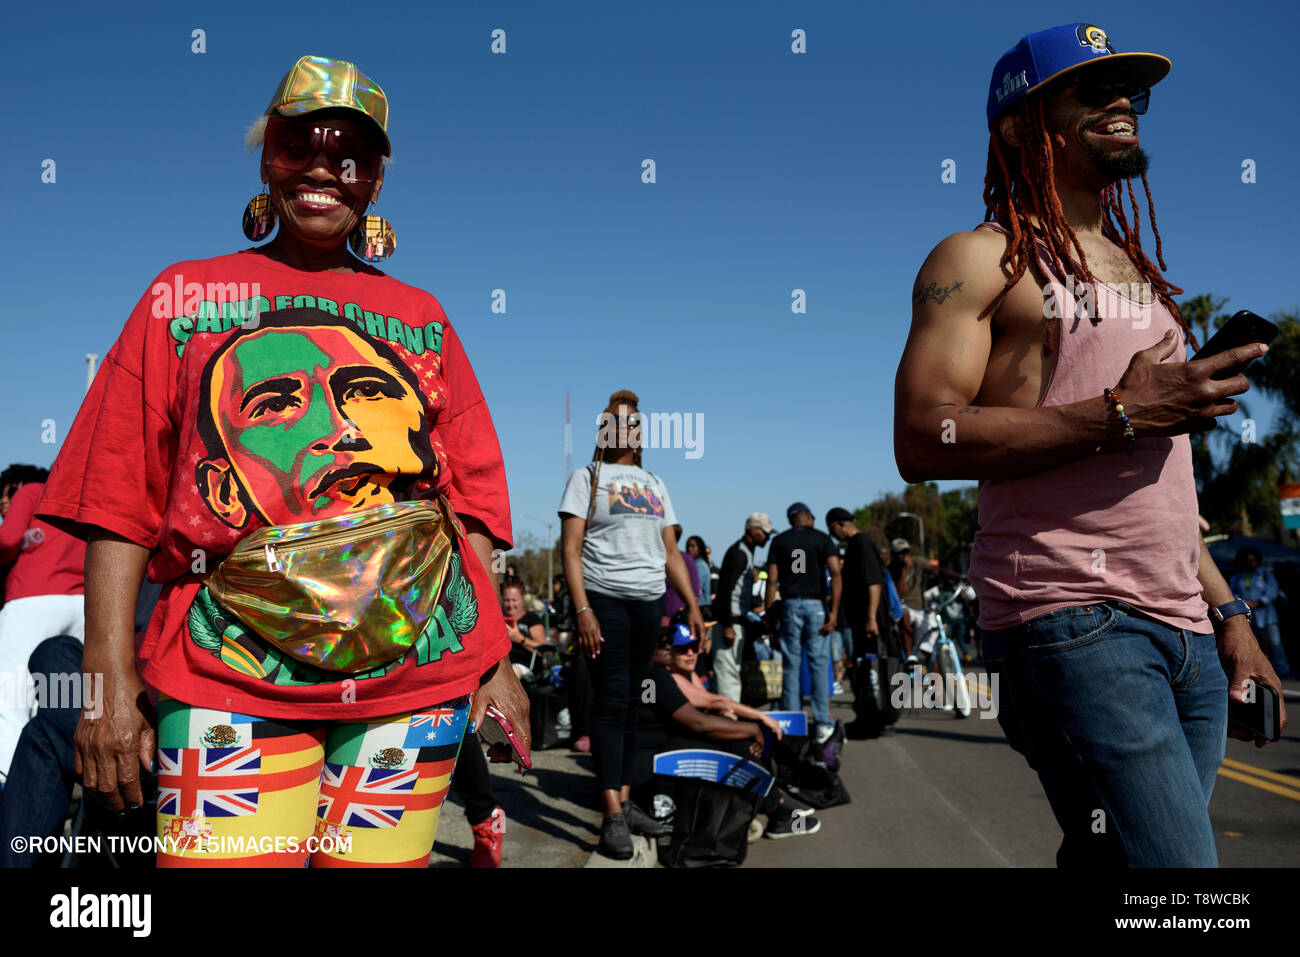 Une femme vu sourire pendant le festival. Les gens se rassemblent dans le cadre d'un festival pour célébrer le changement de route de rodéo Boulevard Obama, en l'honneur de l'ancien président américain Barack Obama à Los Angeles, Californie. Banque D'Images